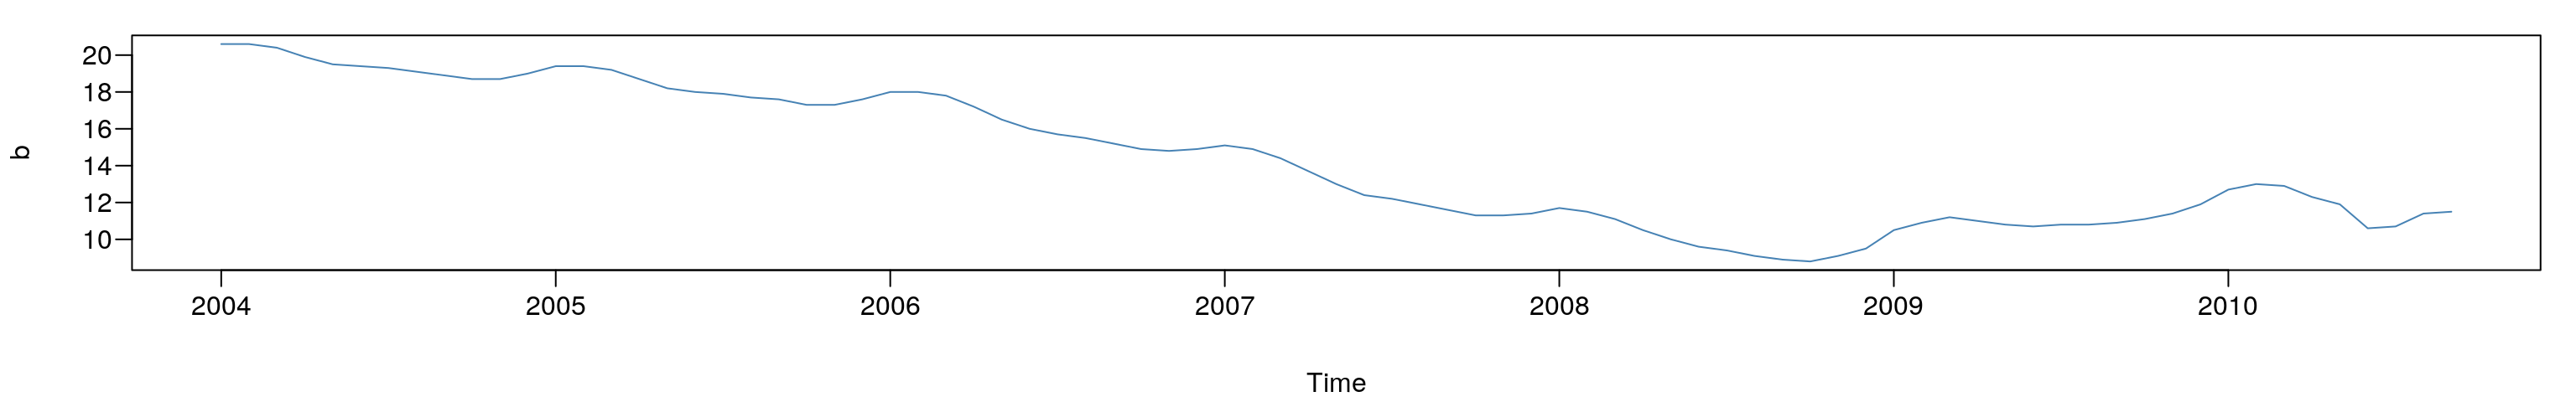 Stopa bezrobocia w Polsce od 01-2004 do 10-2010 roku.